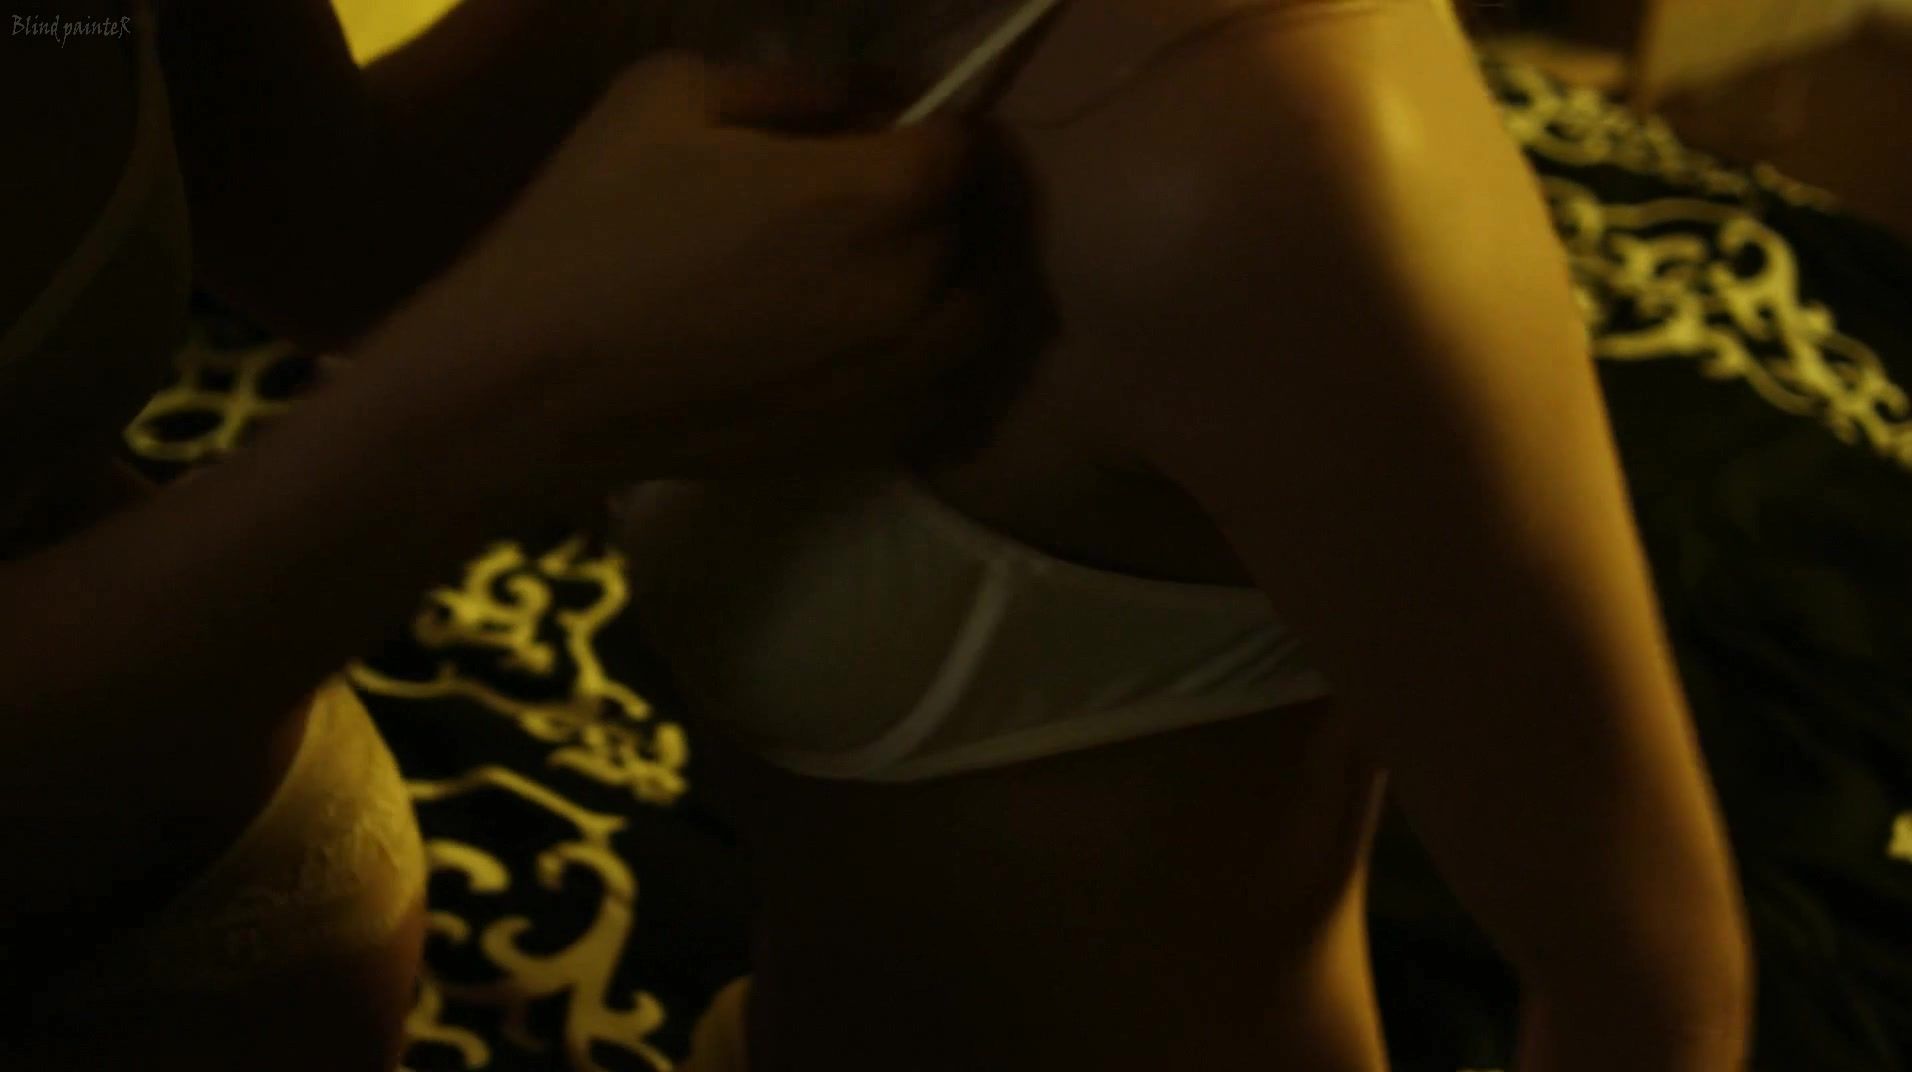 Mexicano Naked Chelsey Reist & Sharon Hinnendael - Embrace of the Vampire (2013) Brett Rossi